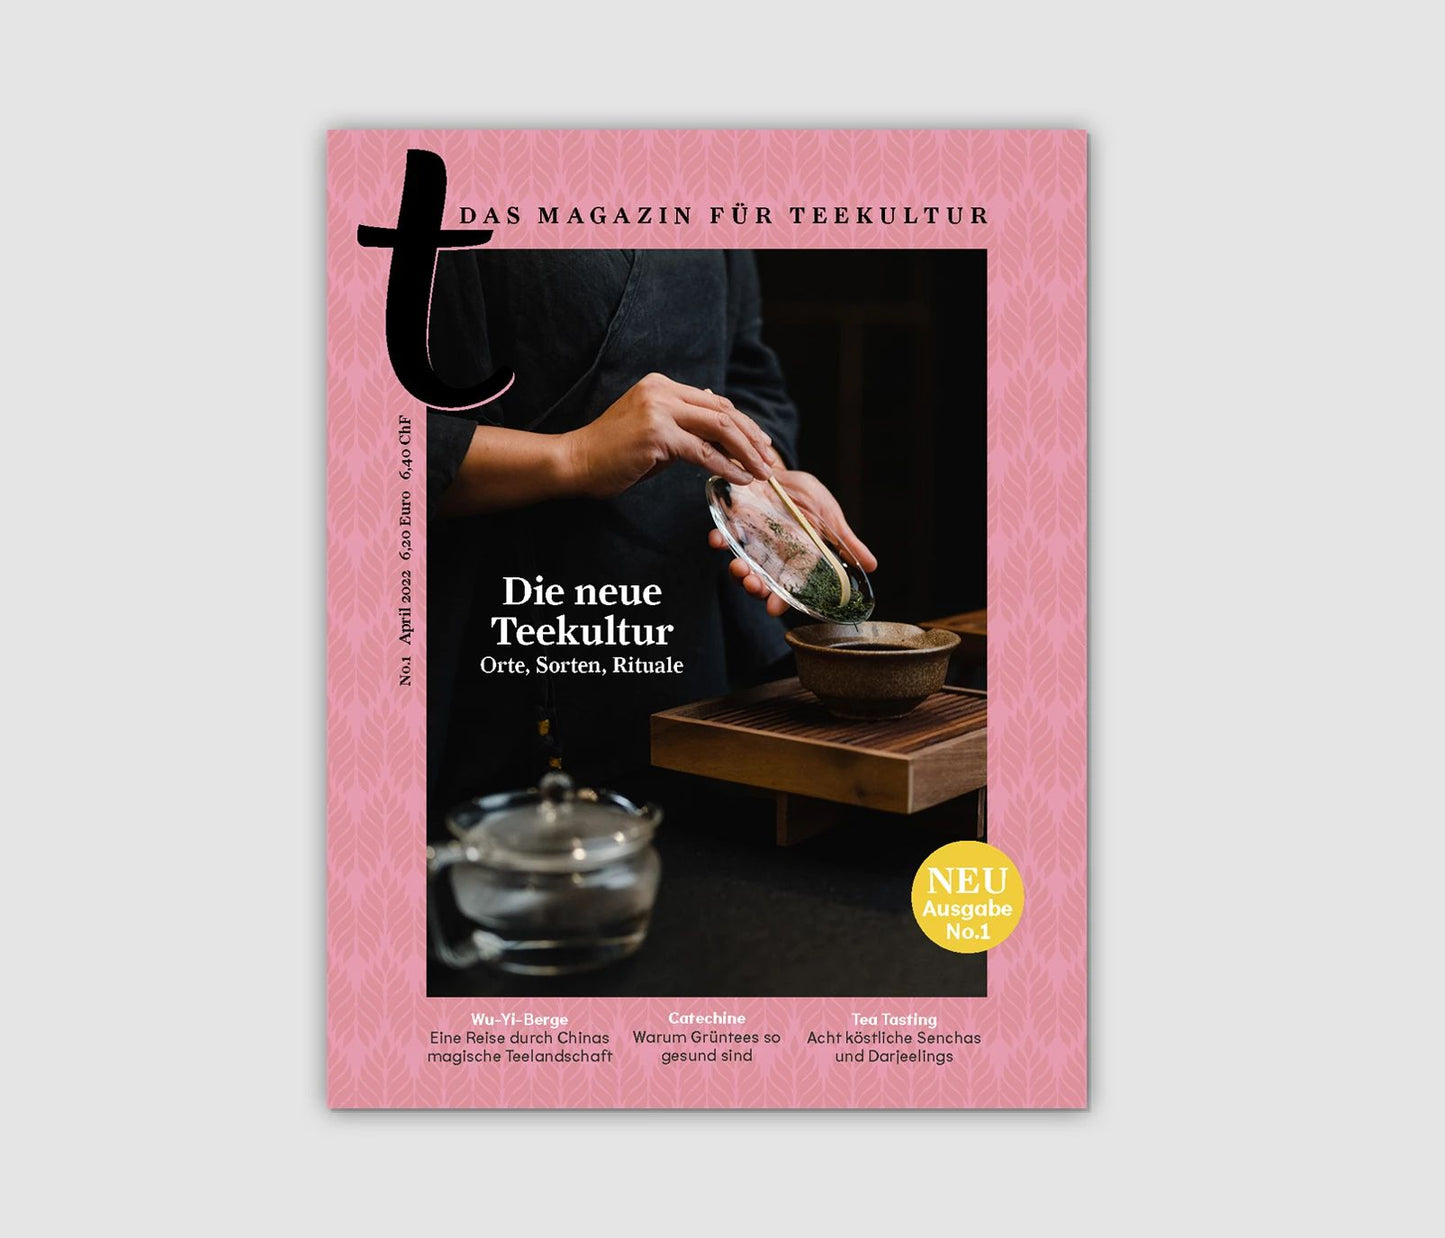 t - Das Magazin für Teekultur #1